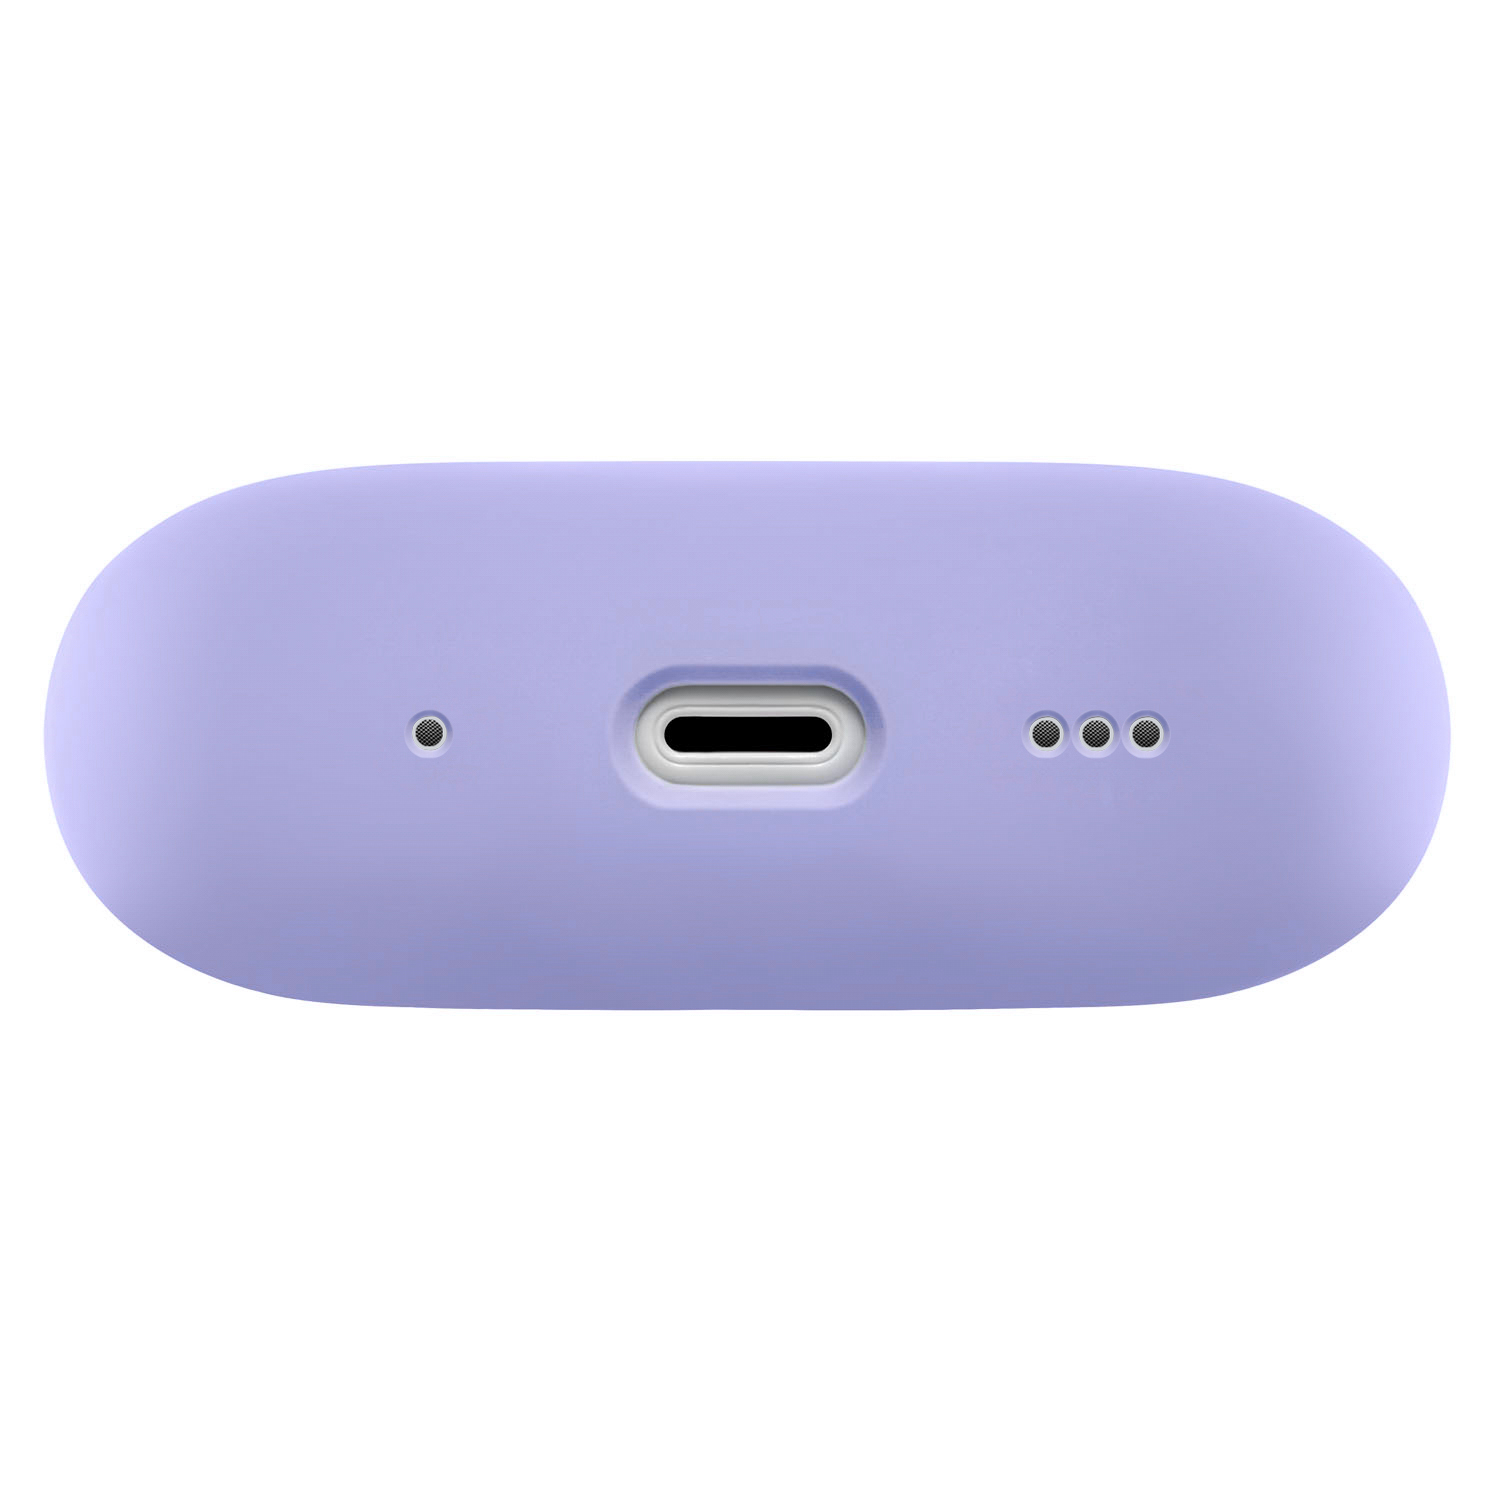 Защитный чехол AirPods Pro 2 Touch Pro Silicone Case, 1,5 мм усиленный, фиолетовый